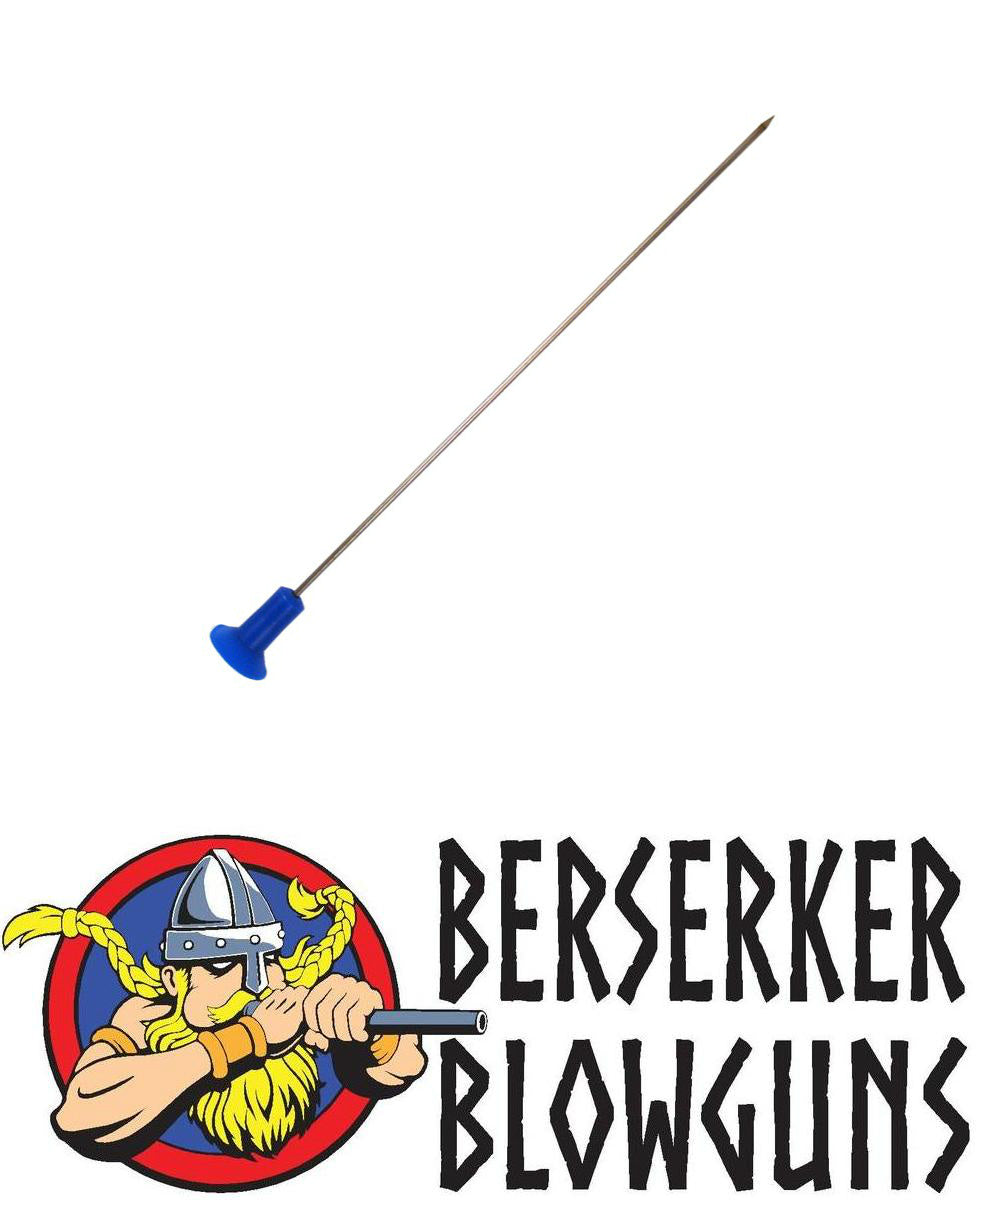 Berserker .40 Cal 4" High Speed Target Darts & ASSORTED Cones - 10 count to 250 count